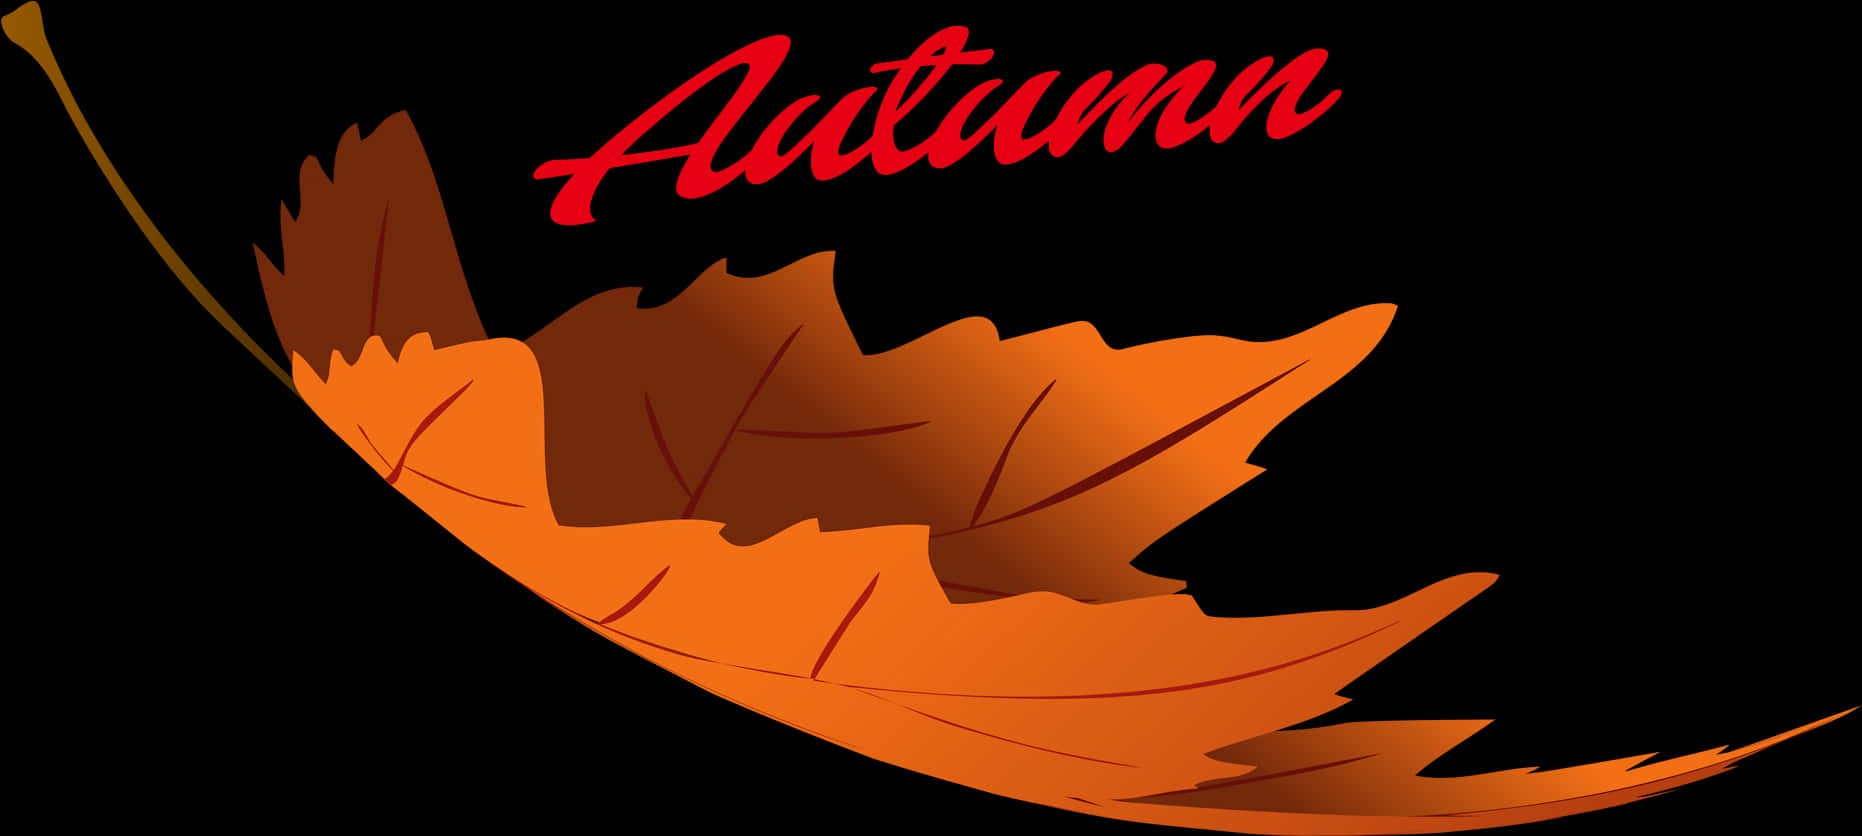 Autumn Leaf Graphic